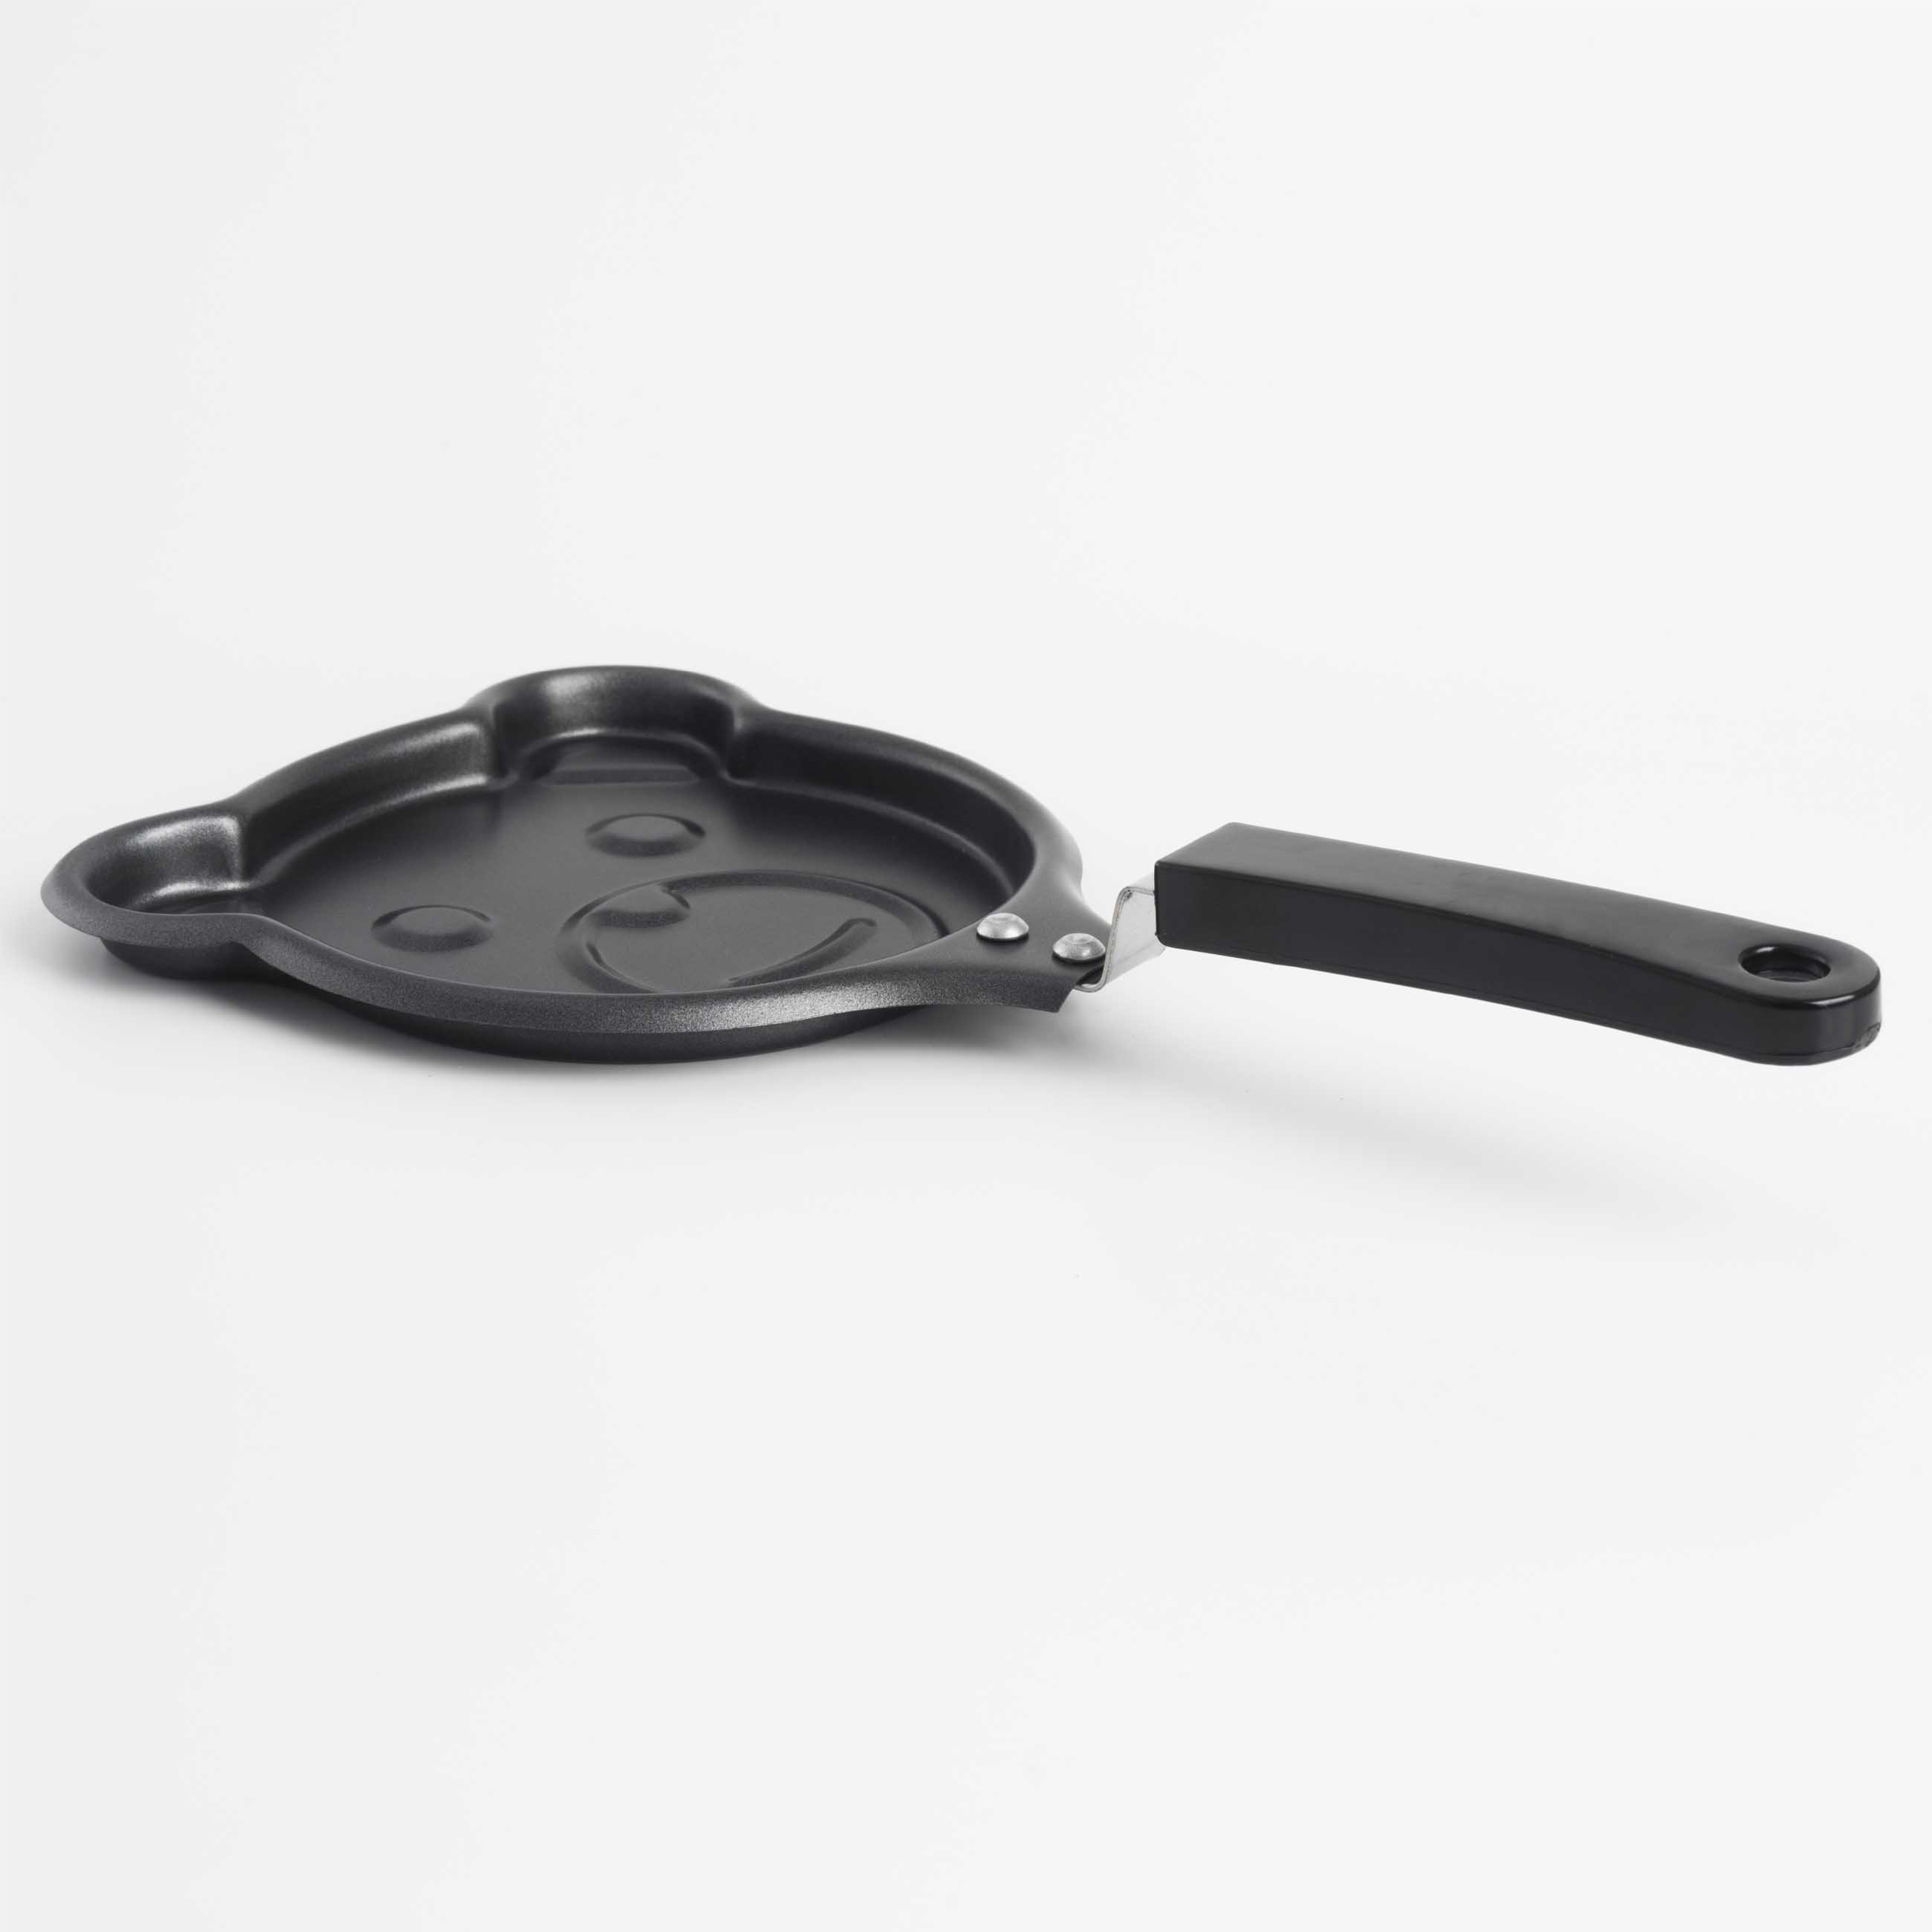 Сковорода для омлета и панкейков, 13 см, с покрытием, сталь, черная, Мишка, Bear изображение № 4